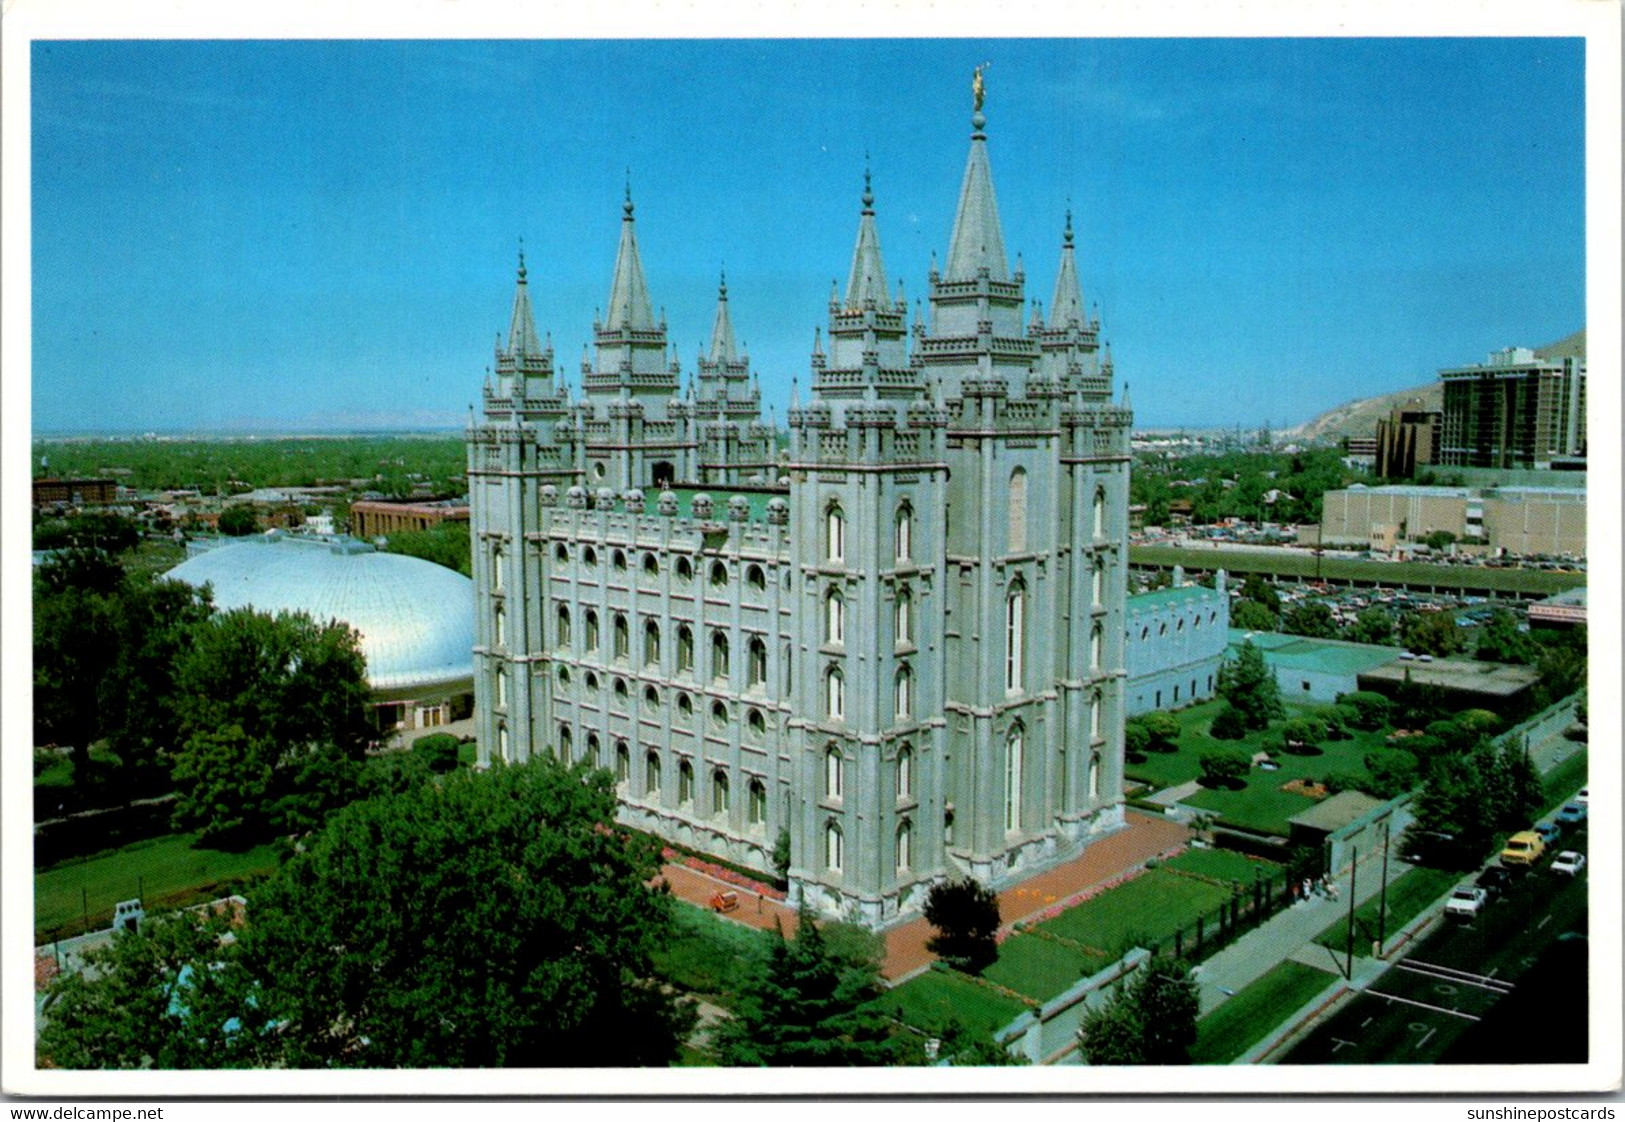 Uyah Salt Lake City Temple Square The Mormon Temple - Salt Lake City